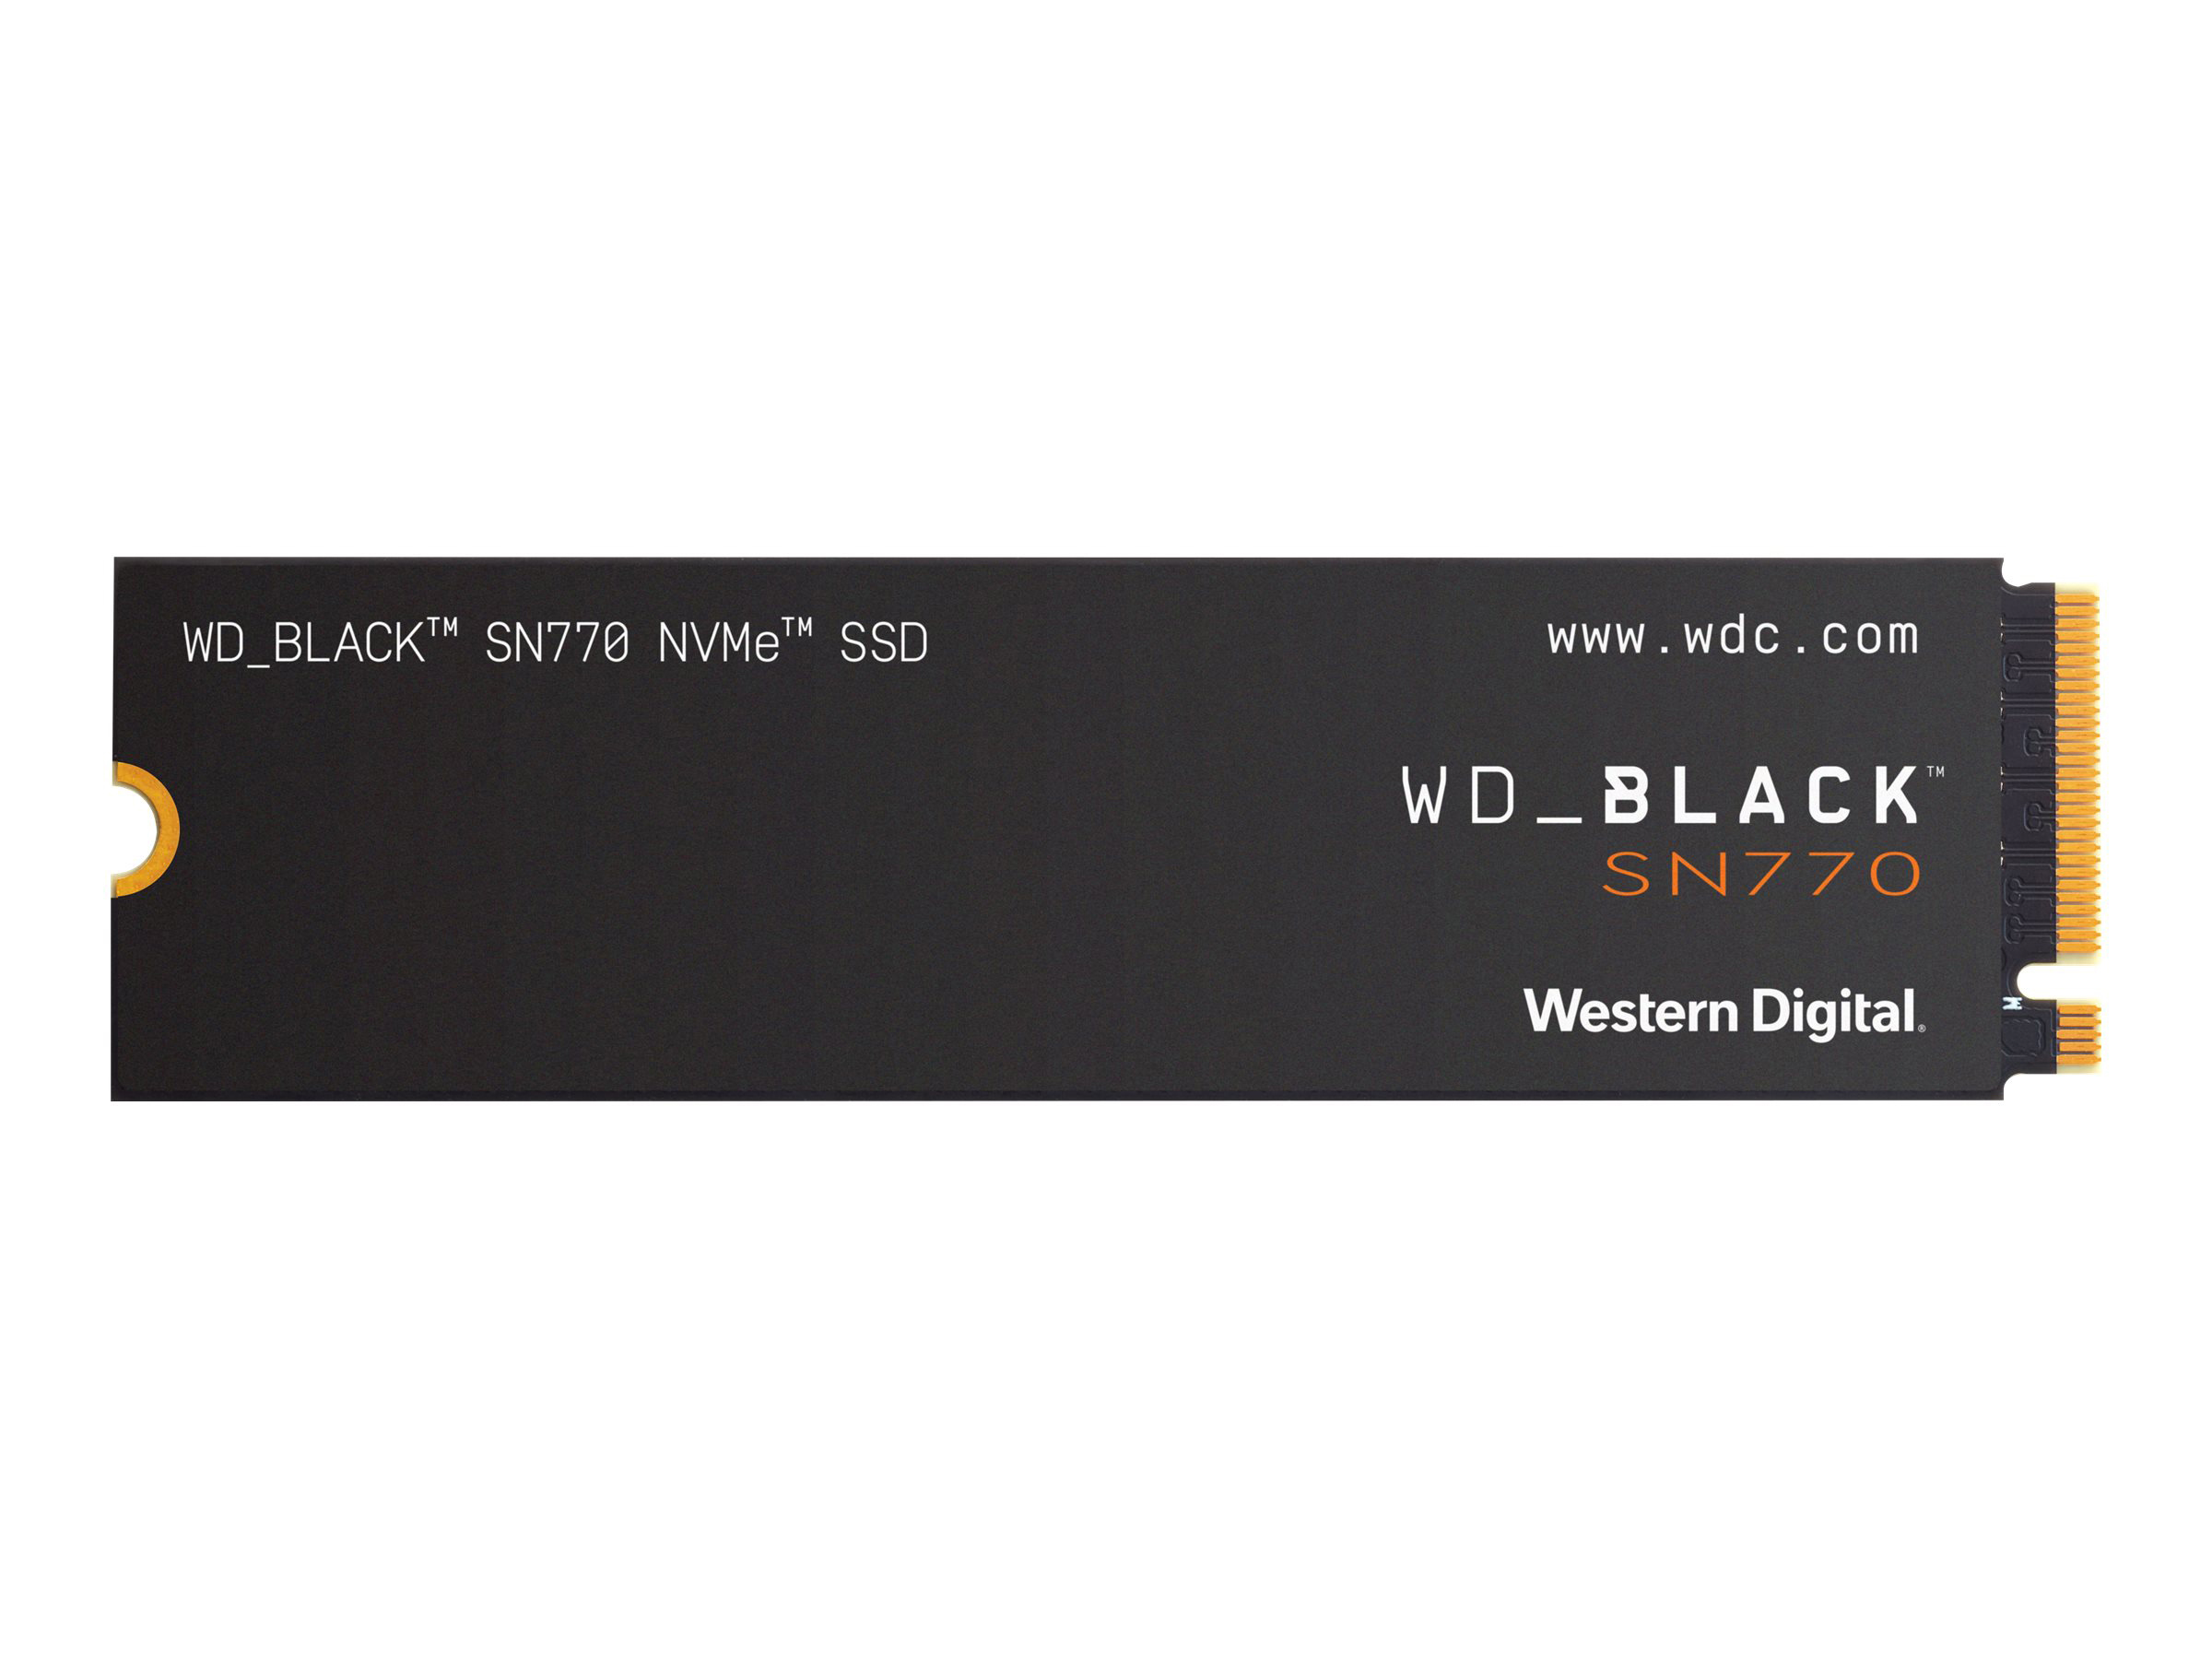 WD_BLACK SN770 250 4.0 (NVMe) Express, GB PCI Festplatte, x4 SSD intern WDS250G3X0E